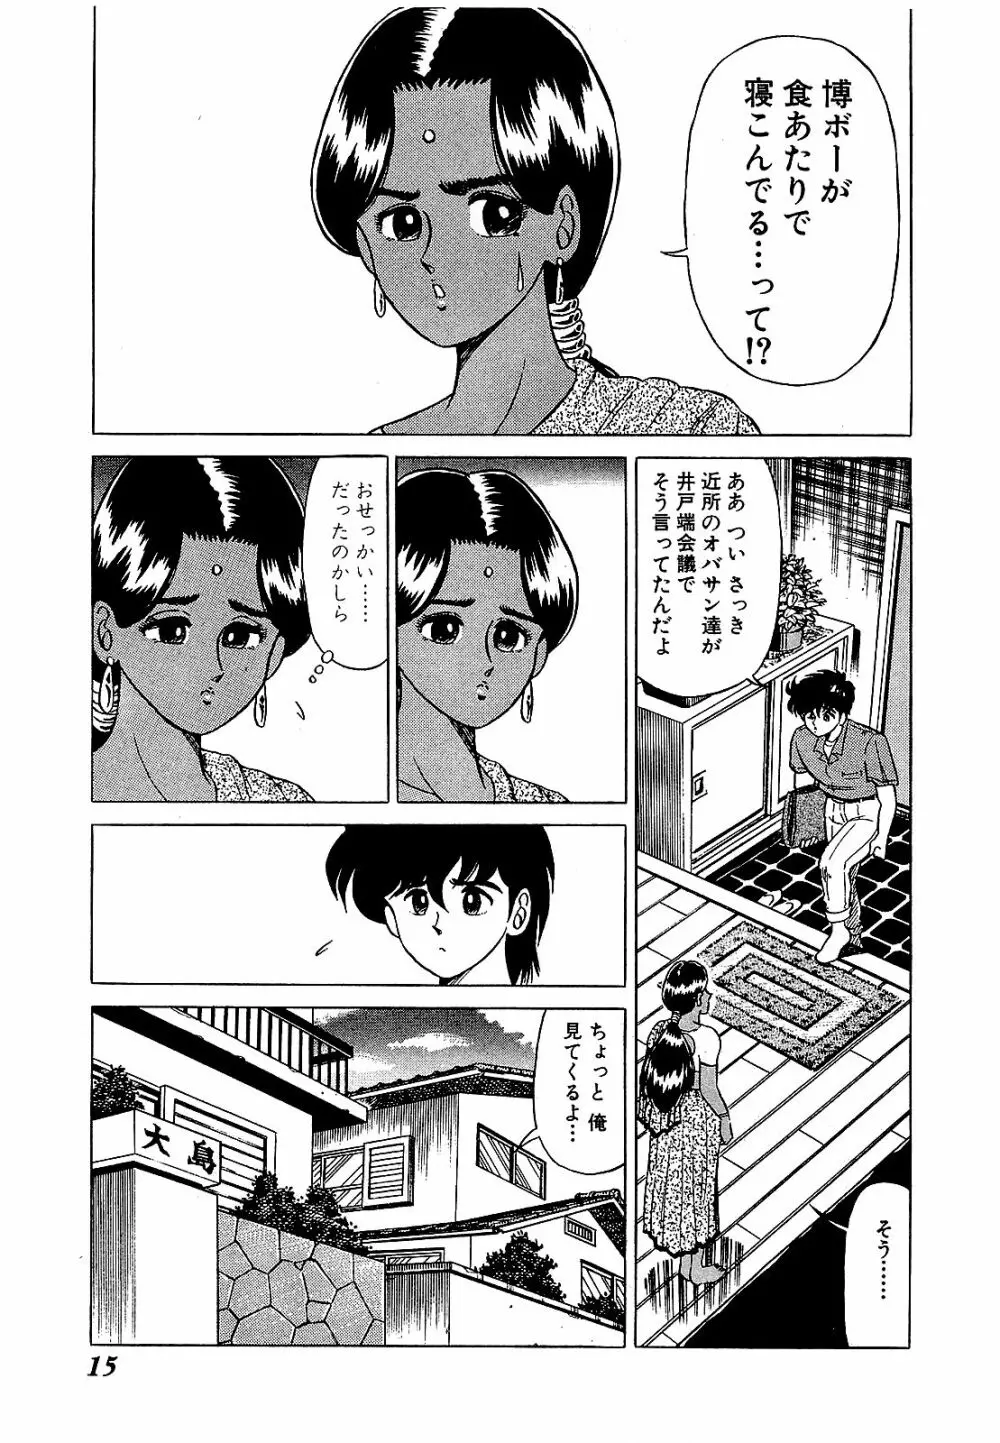 Ikenai Boy 05 18ページ